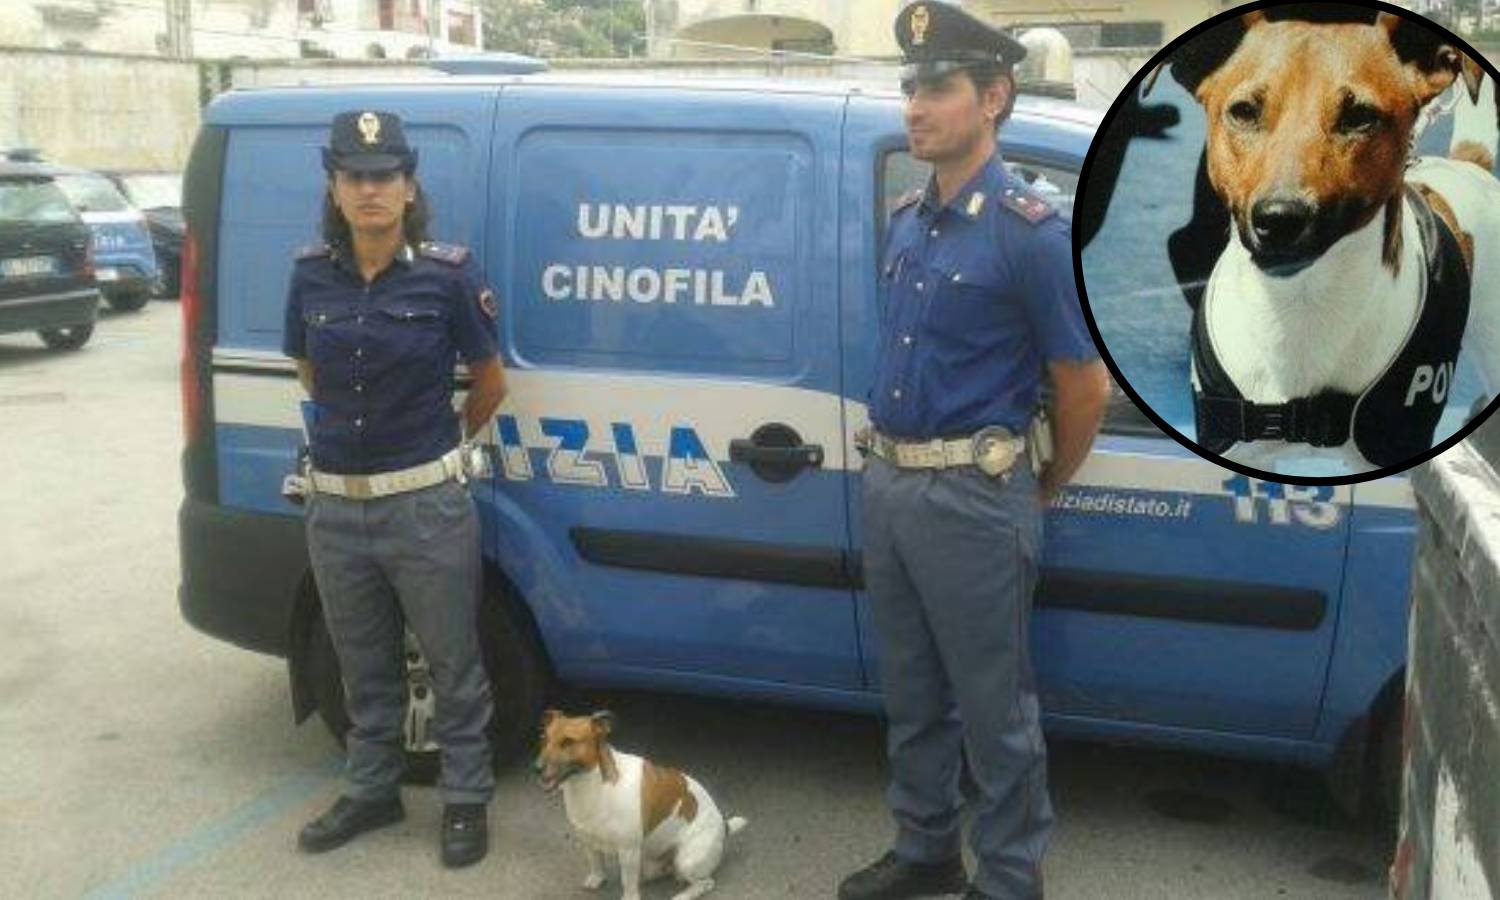 'Koštao nas je milijune!': Mafija nudi 5.000 € za ubojstvo - psa